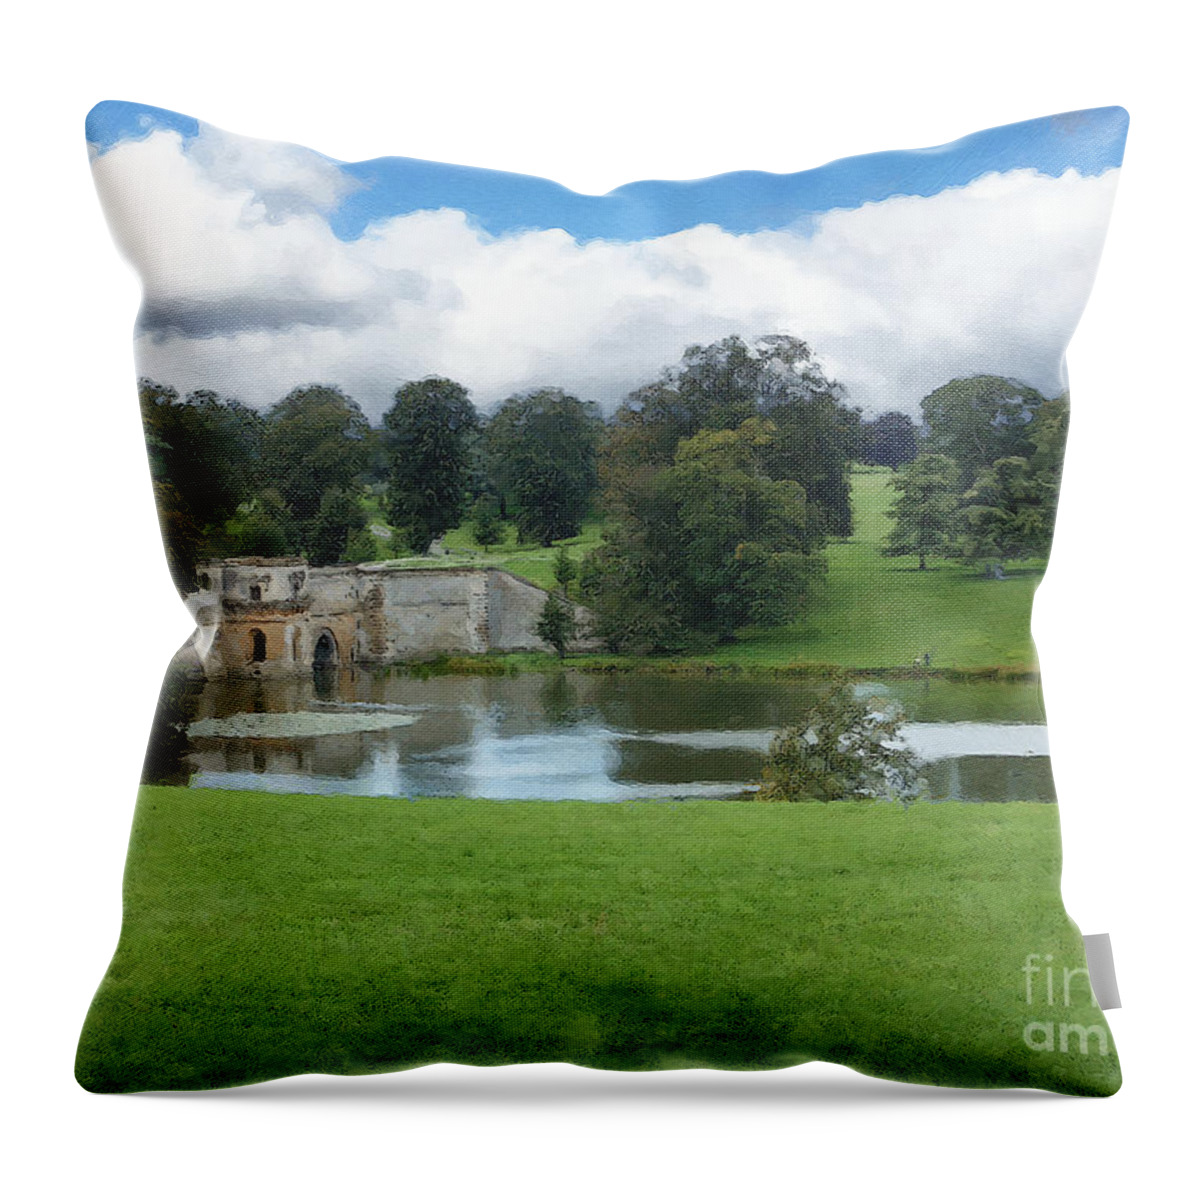 Blenheim Palace Throw Pillow featuring the photograph Blenheim Palace Grounds by Brian Watt